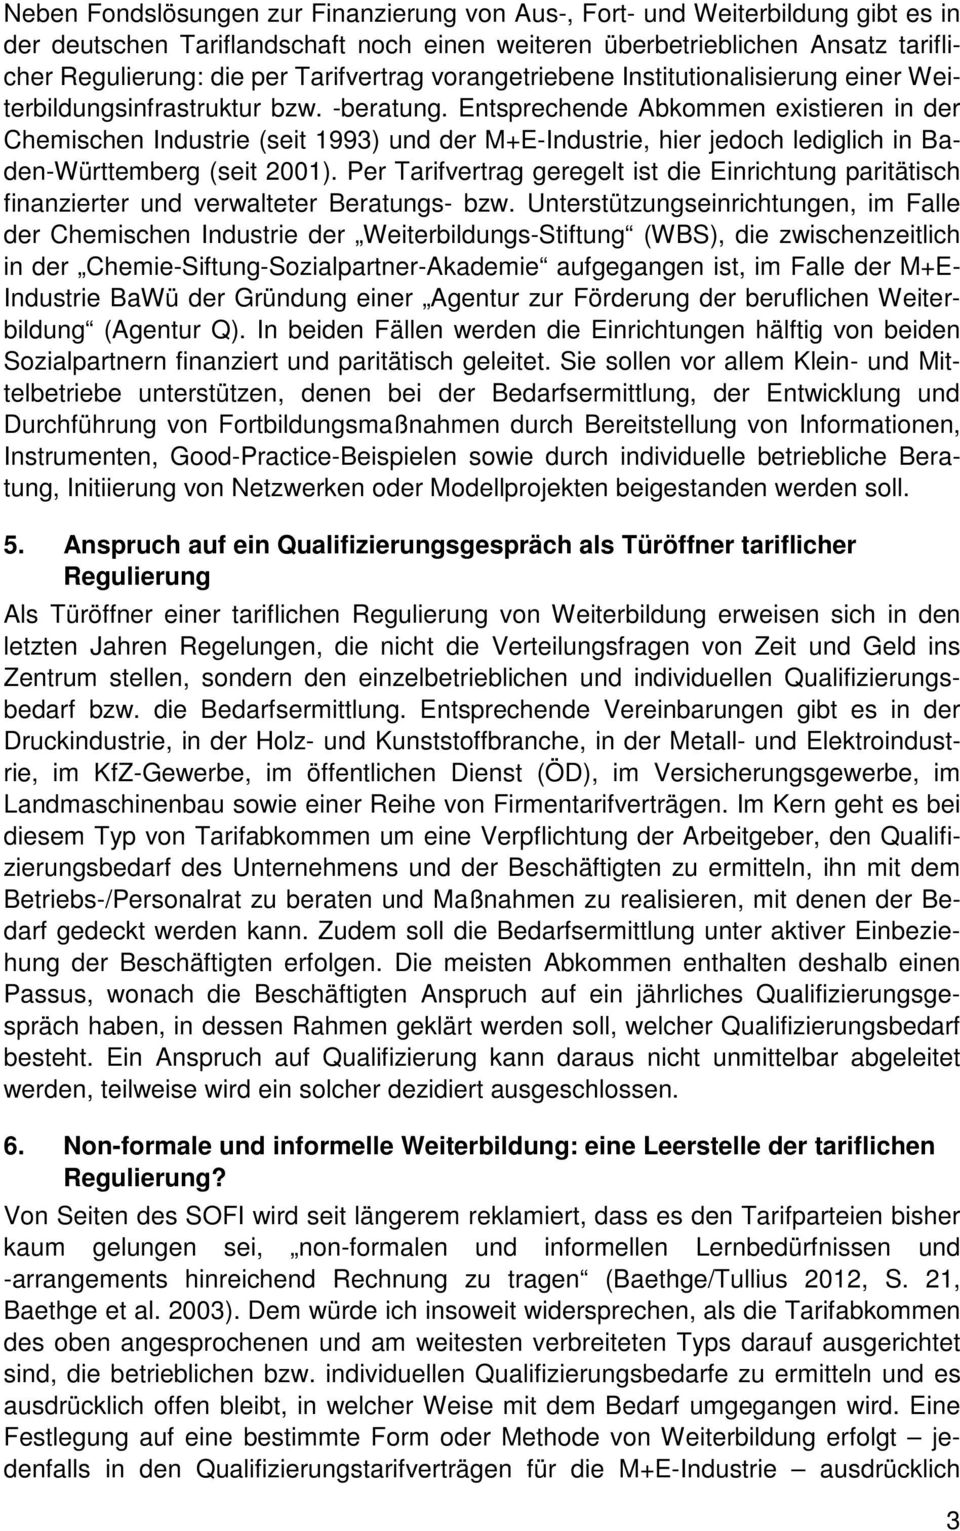 Entsprechende Abkommen existieren in der Chemischen Industrie (seit 13) und der M+E-Industrie, hier jedoch lediglich in Baden-Württemberg (seit 2001).